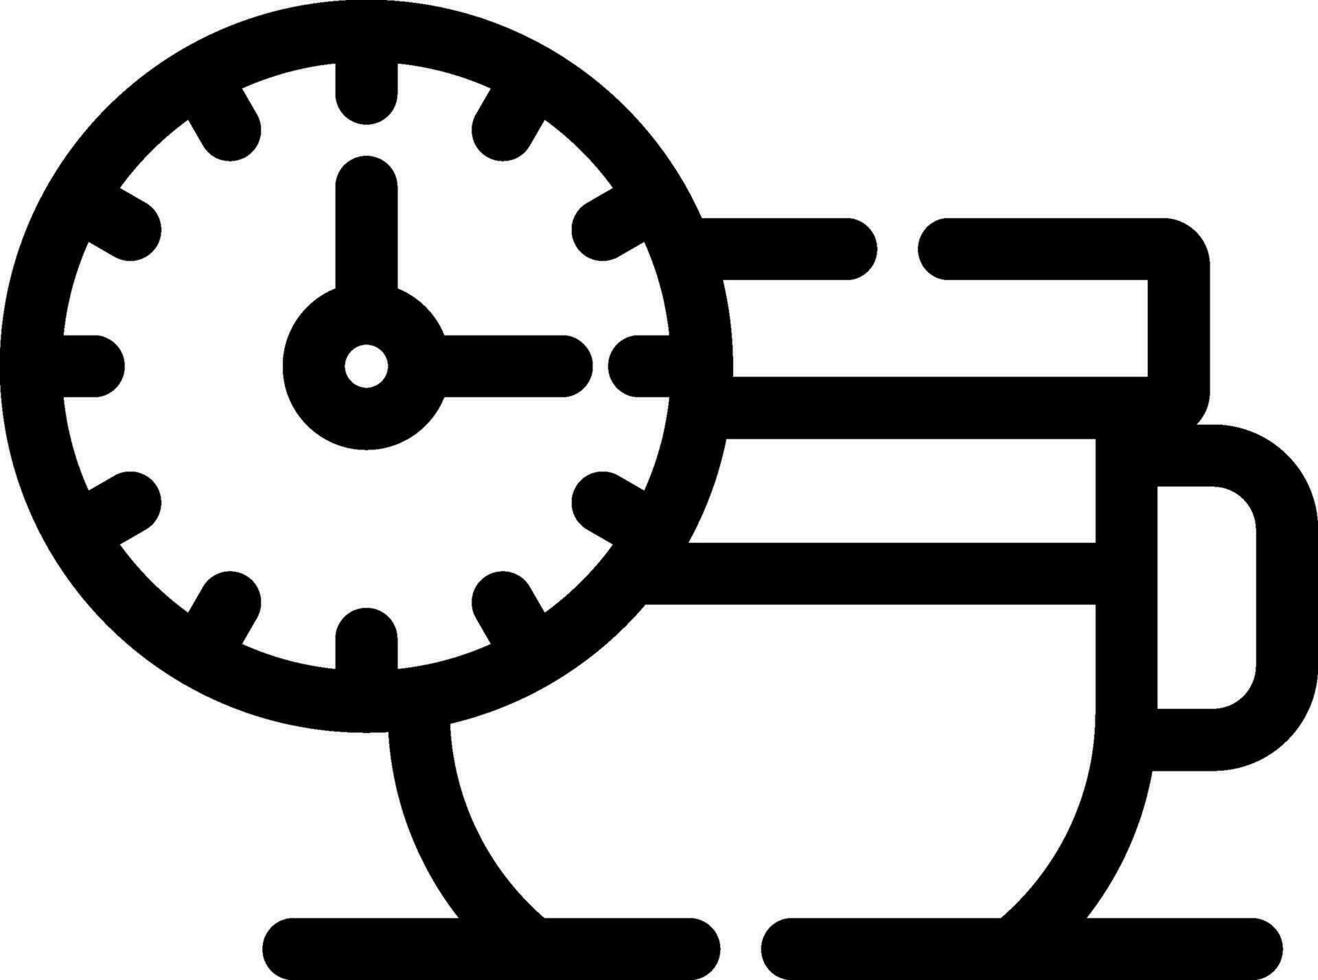 Tea Time Creative Icon Design vector